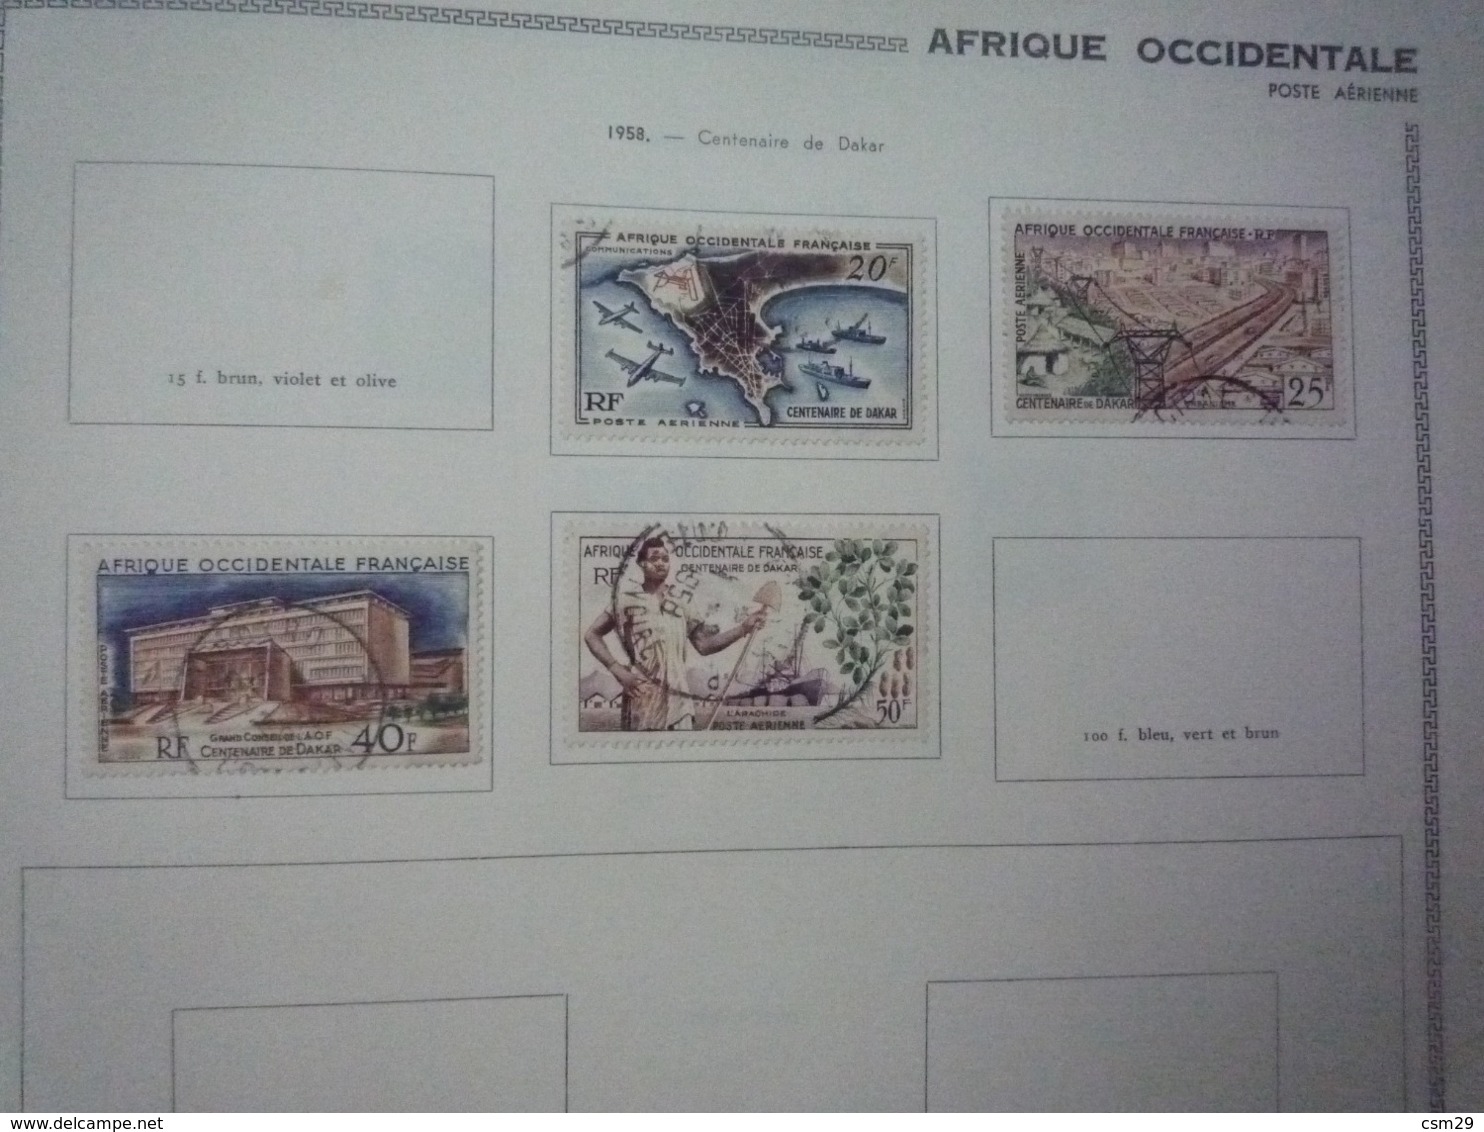 Collection en Album Colonies Françaises  Emissions Générales à Cote d'Ivoire - A compléter -  71 scans